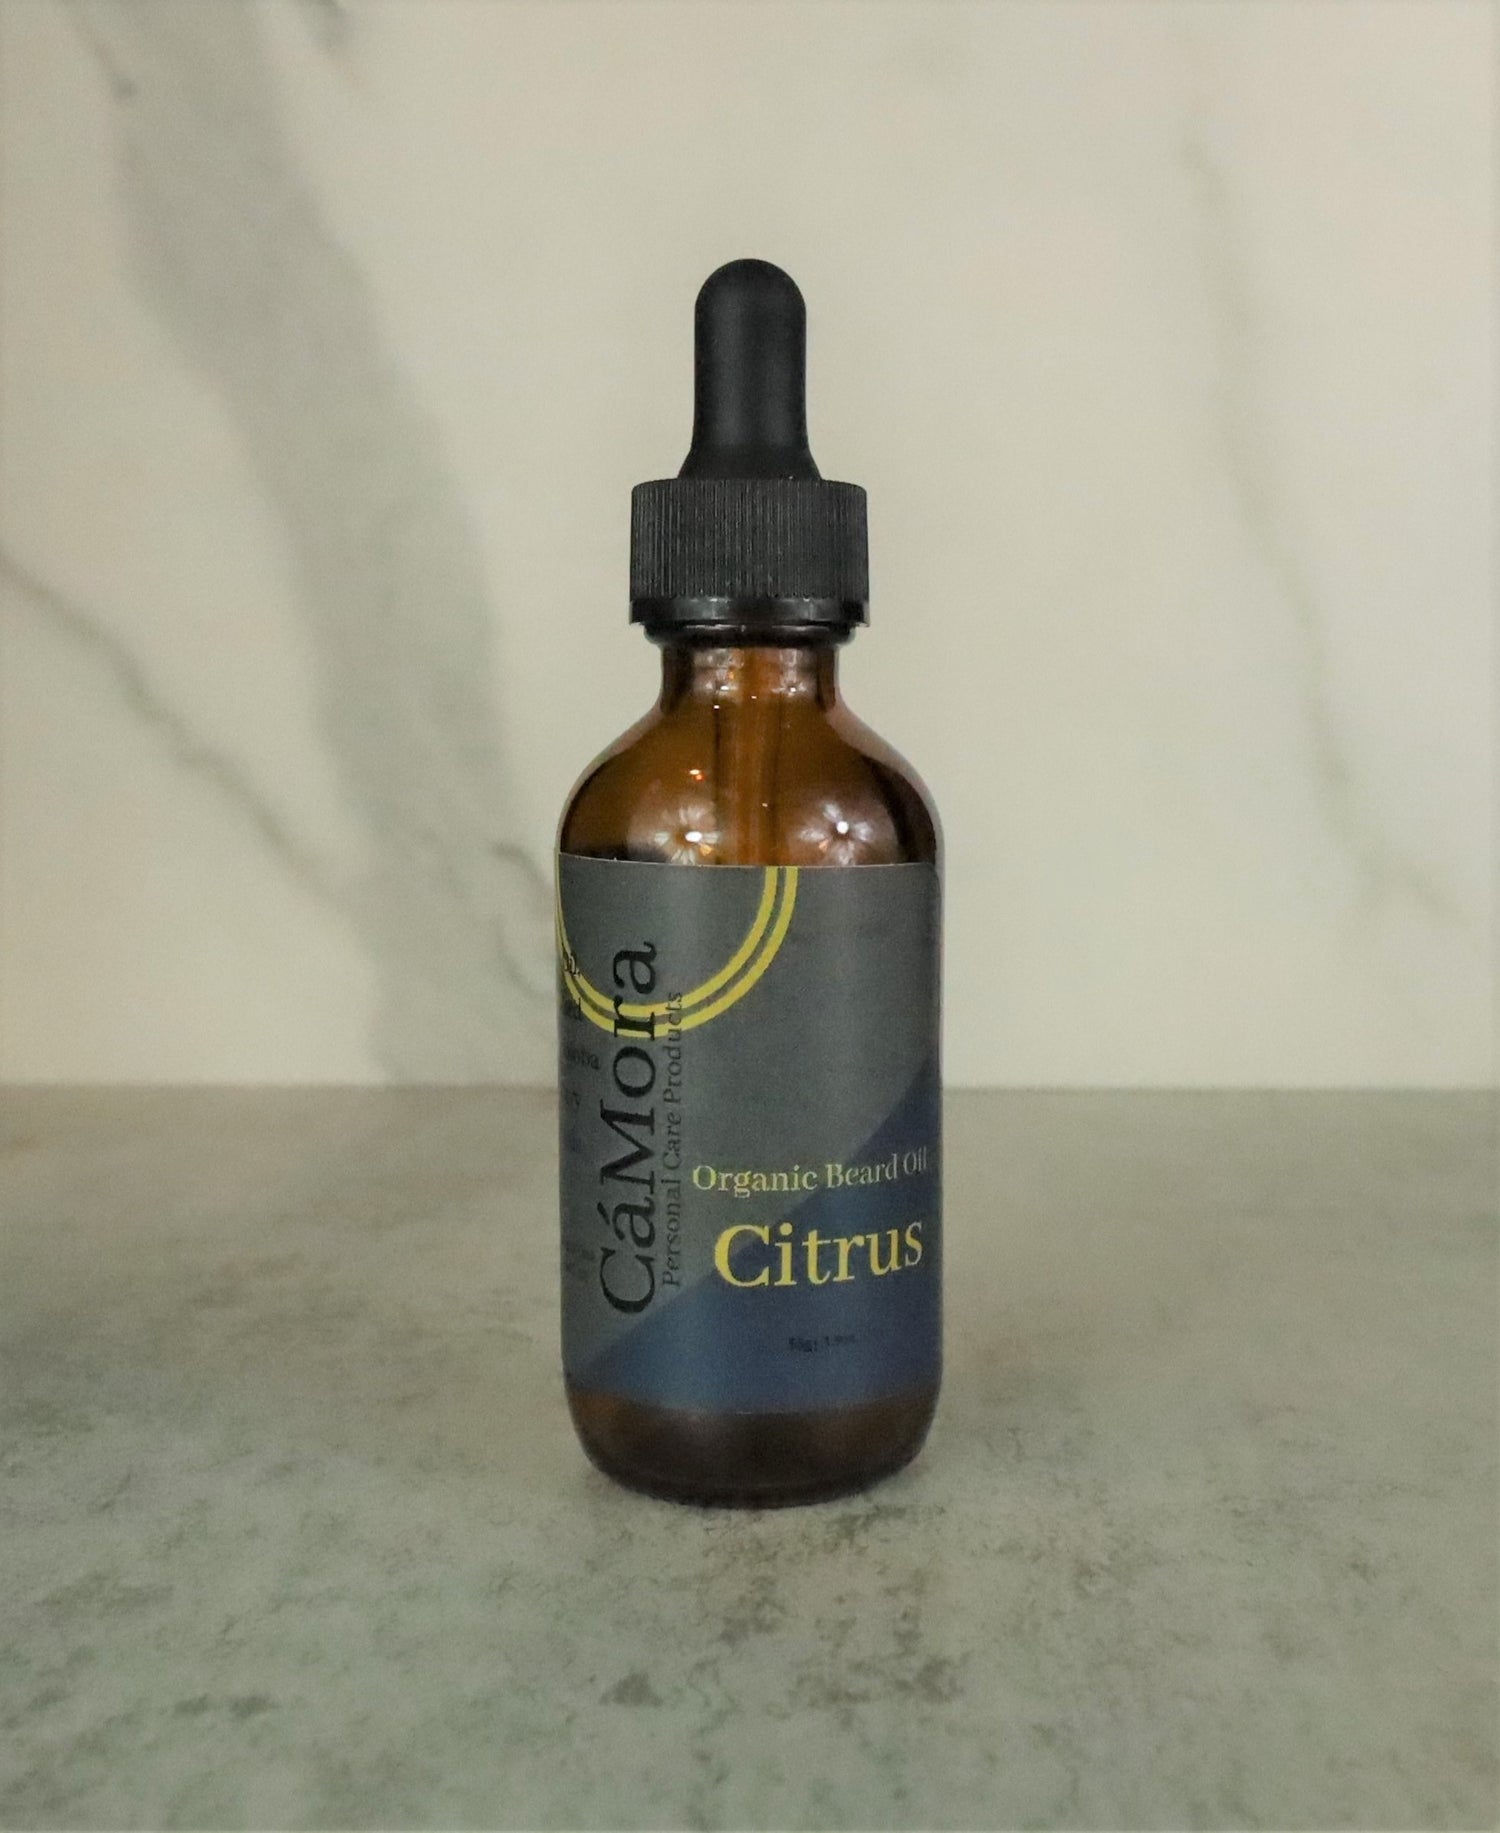 Ca'Mora organic "Signature" Citrus beard oil.  